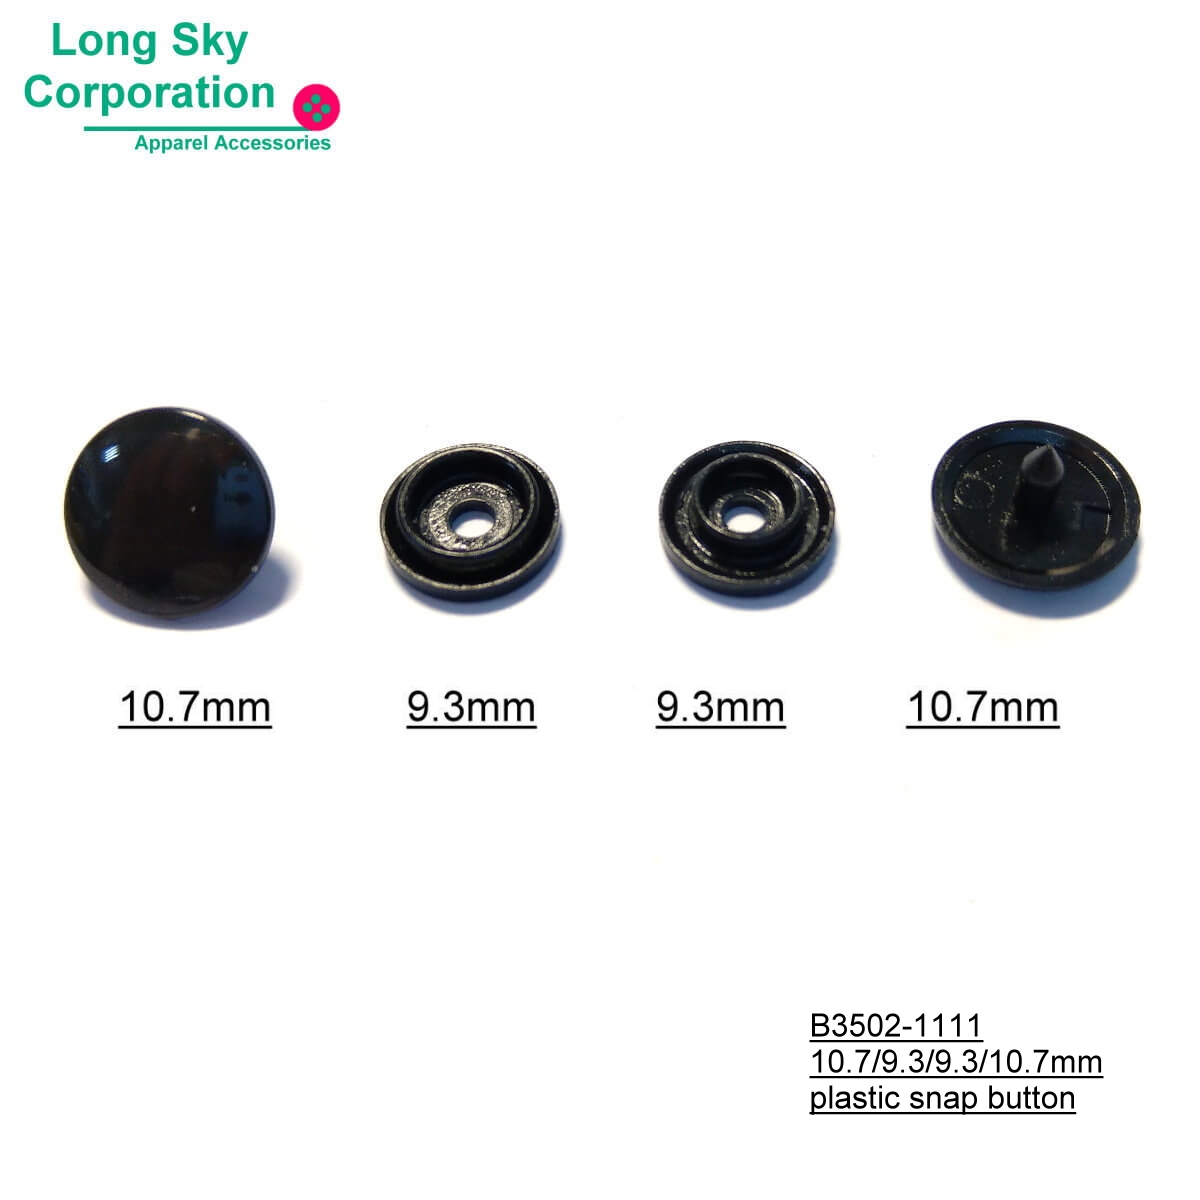 (#B3502-1111) 11mm cap plastic snap button